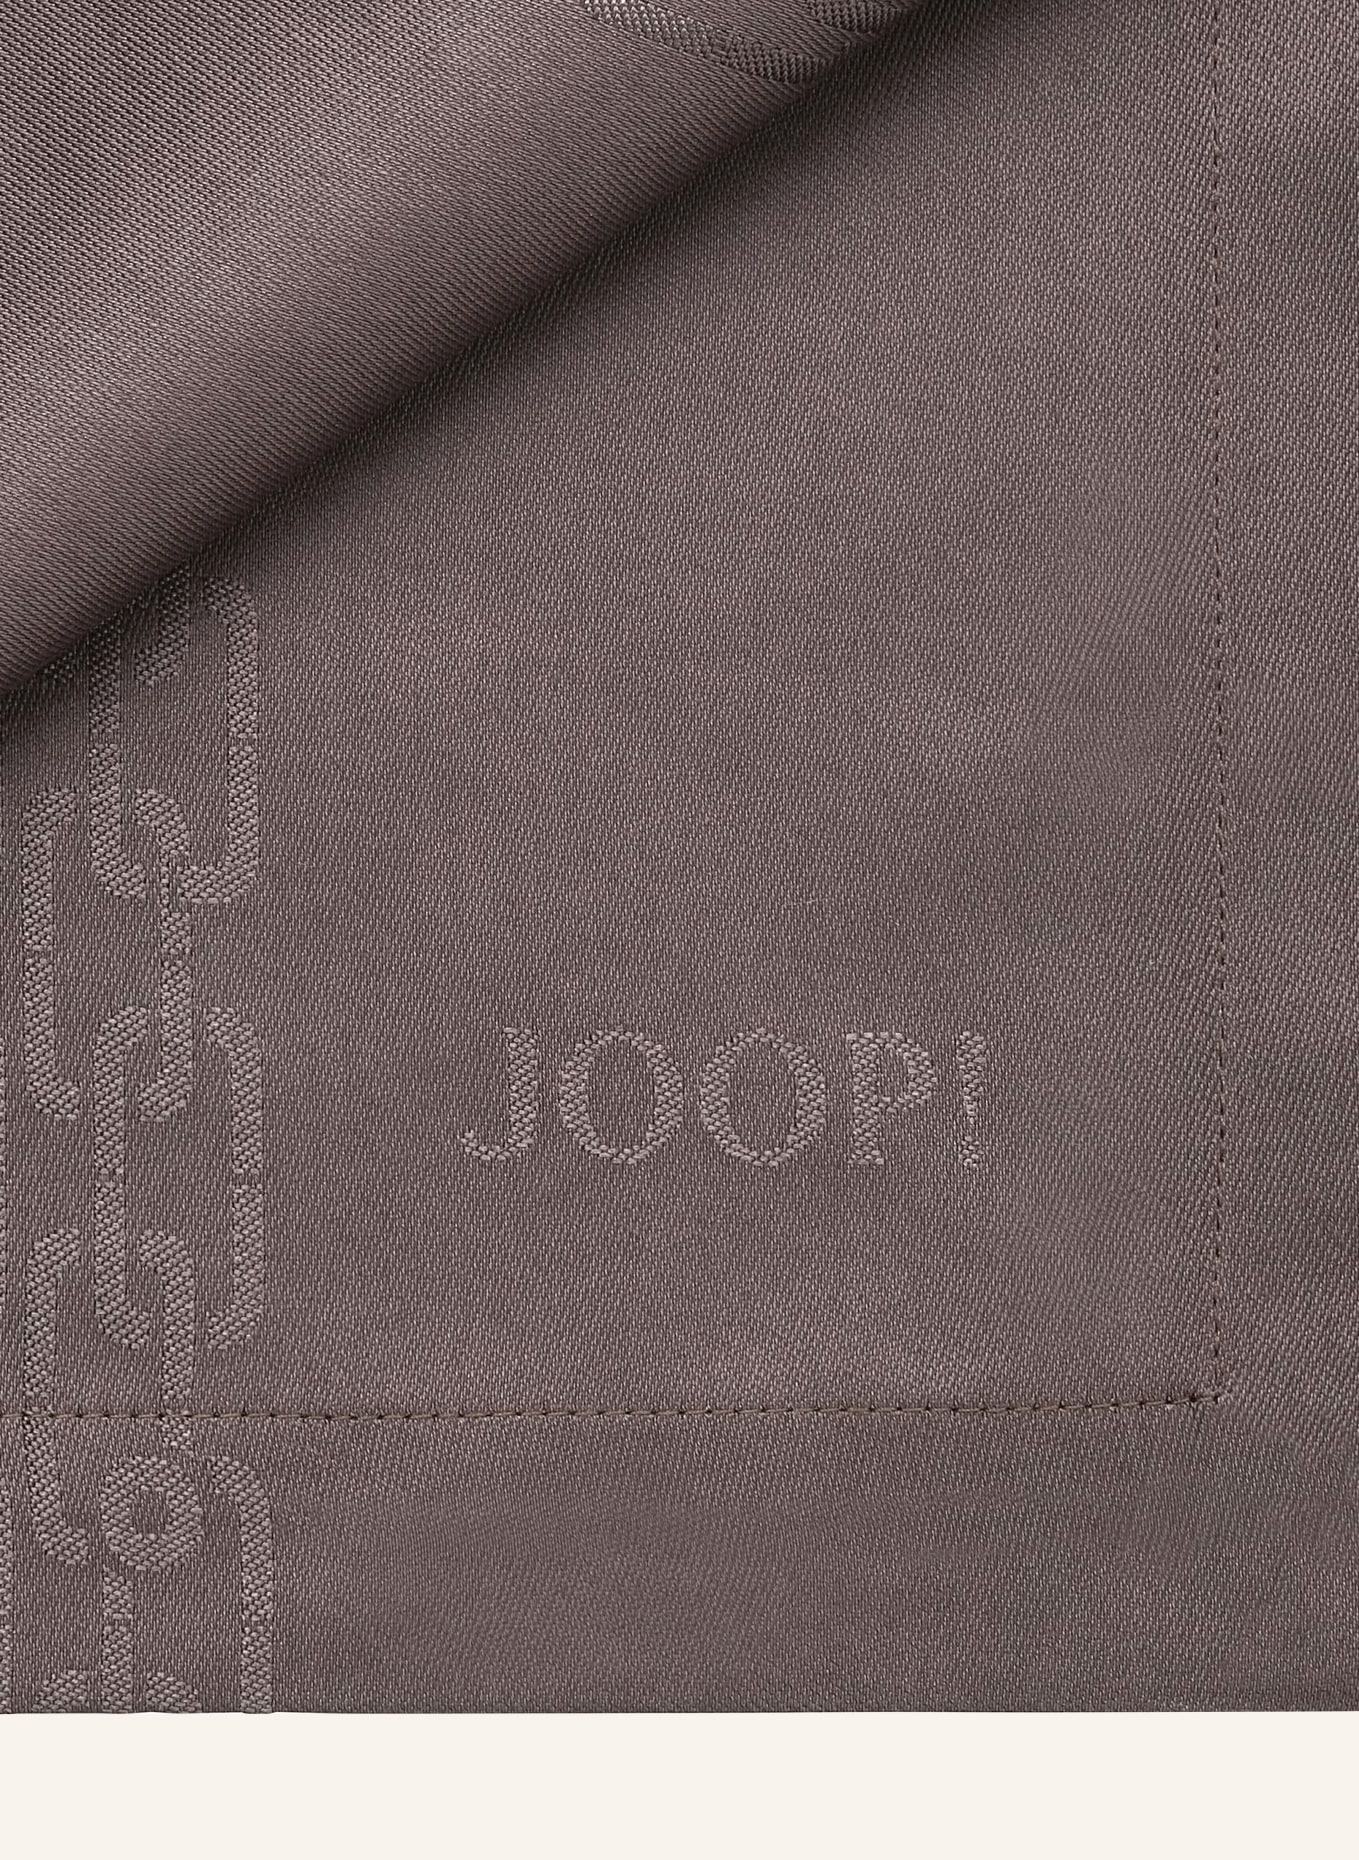 JOOP! 2er-Set Servietten JOOP! CHAINS, Farbe: TAUPE (Bild 2)